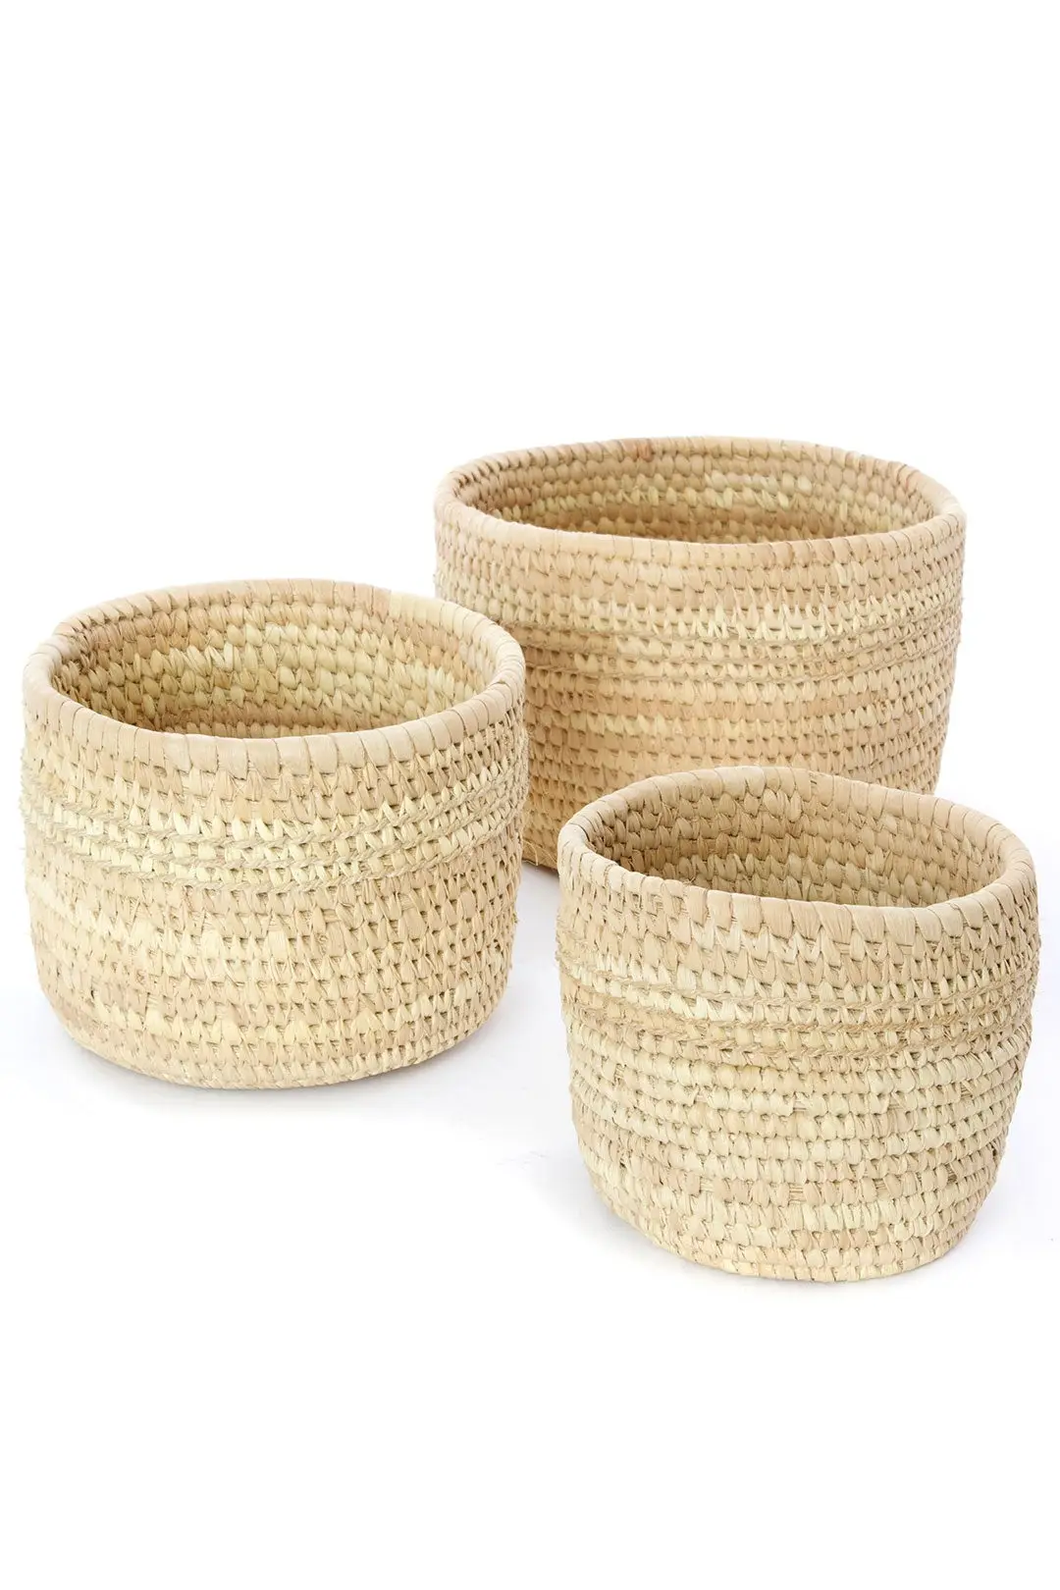 Three all Natural Nomadic natural fiber baskets 